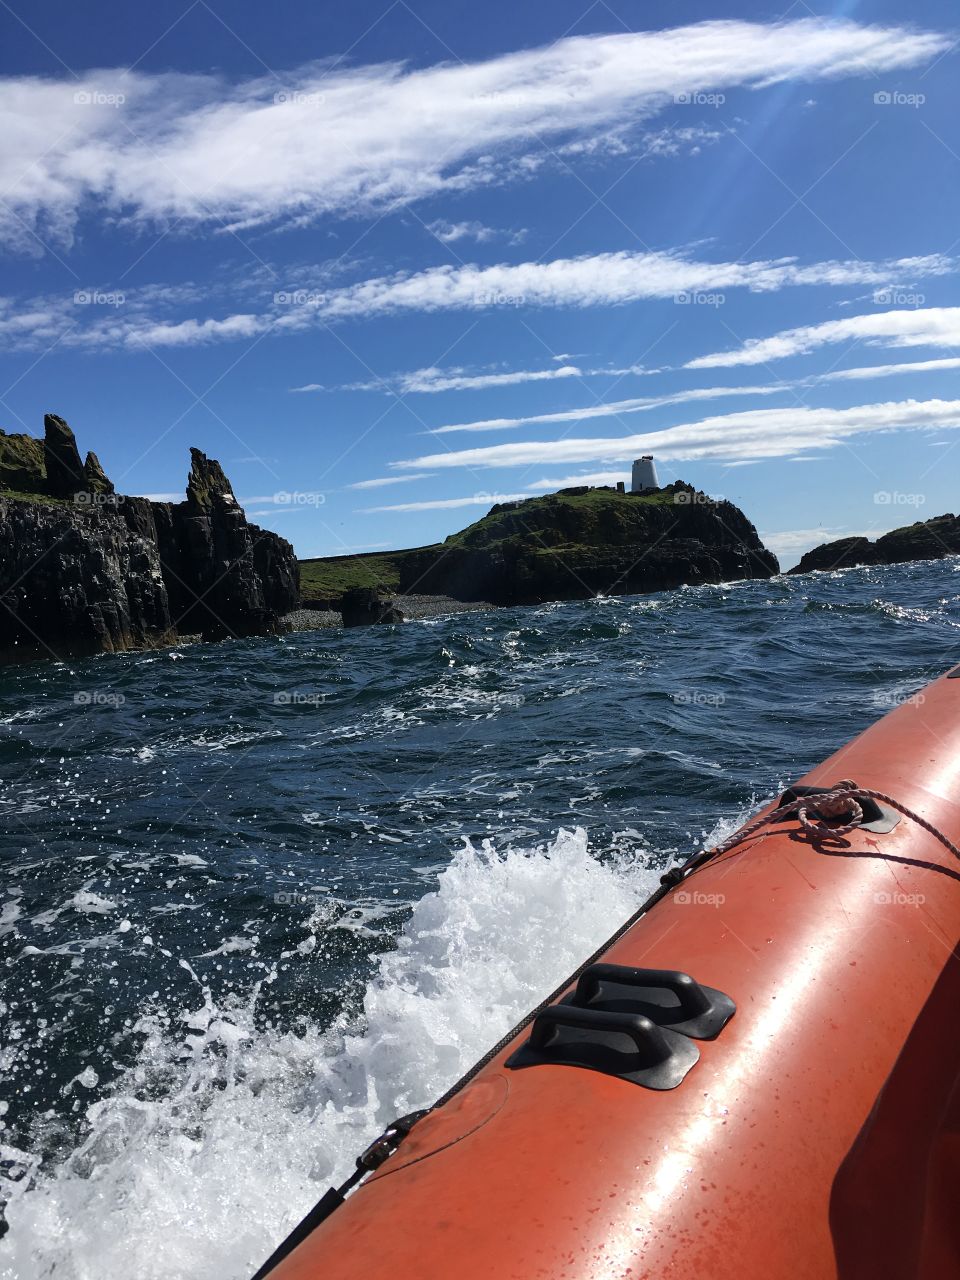 Rib heading to the isle of may, scotland